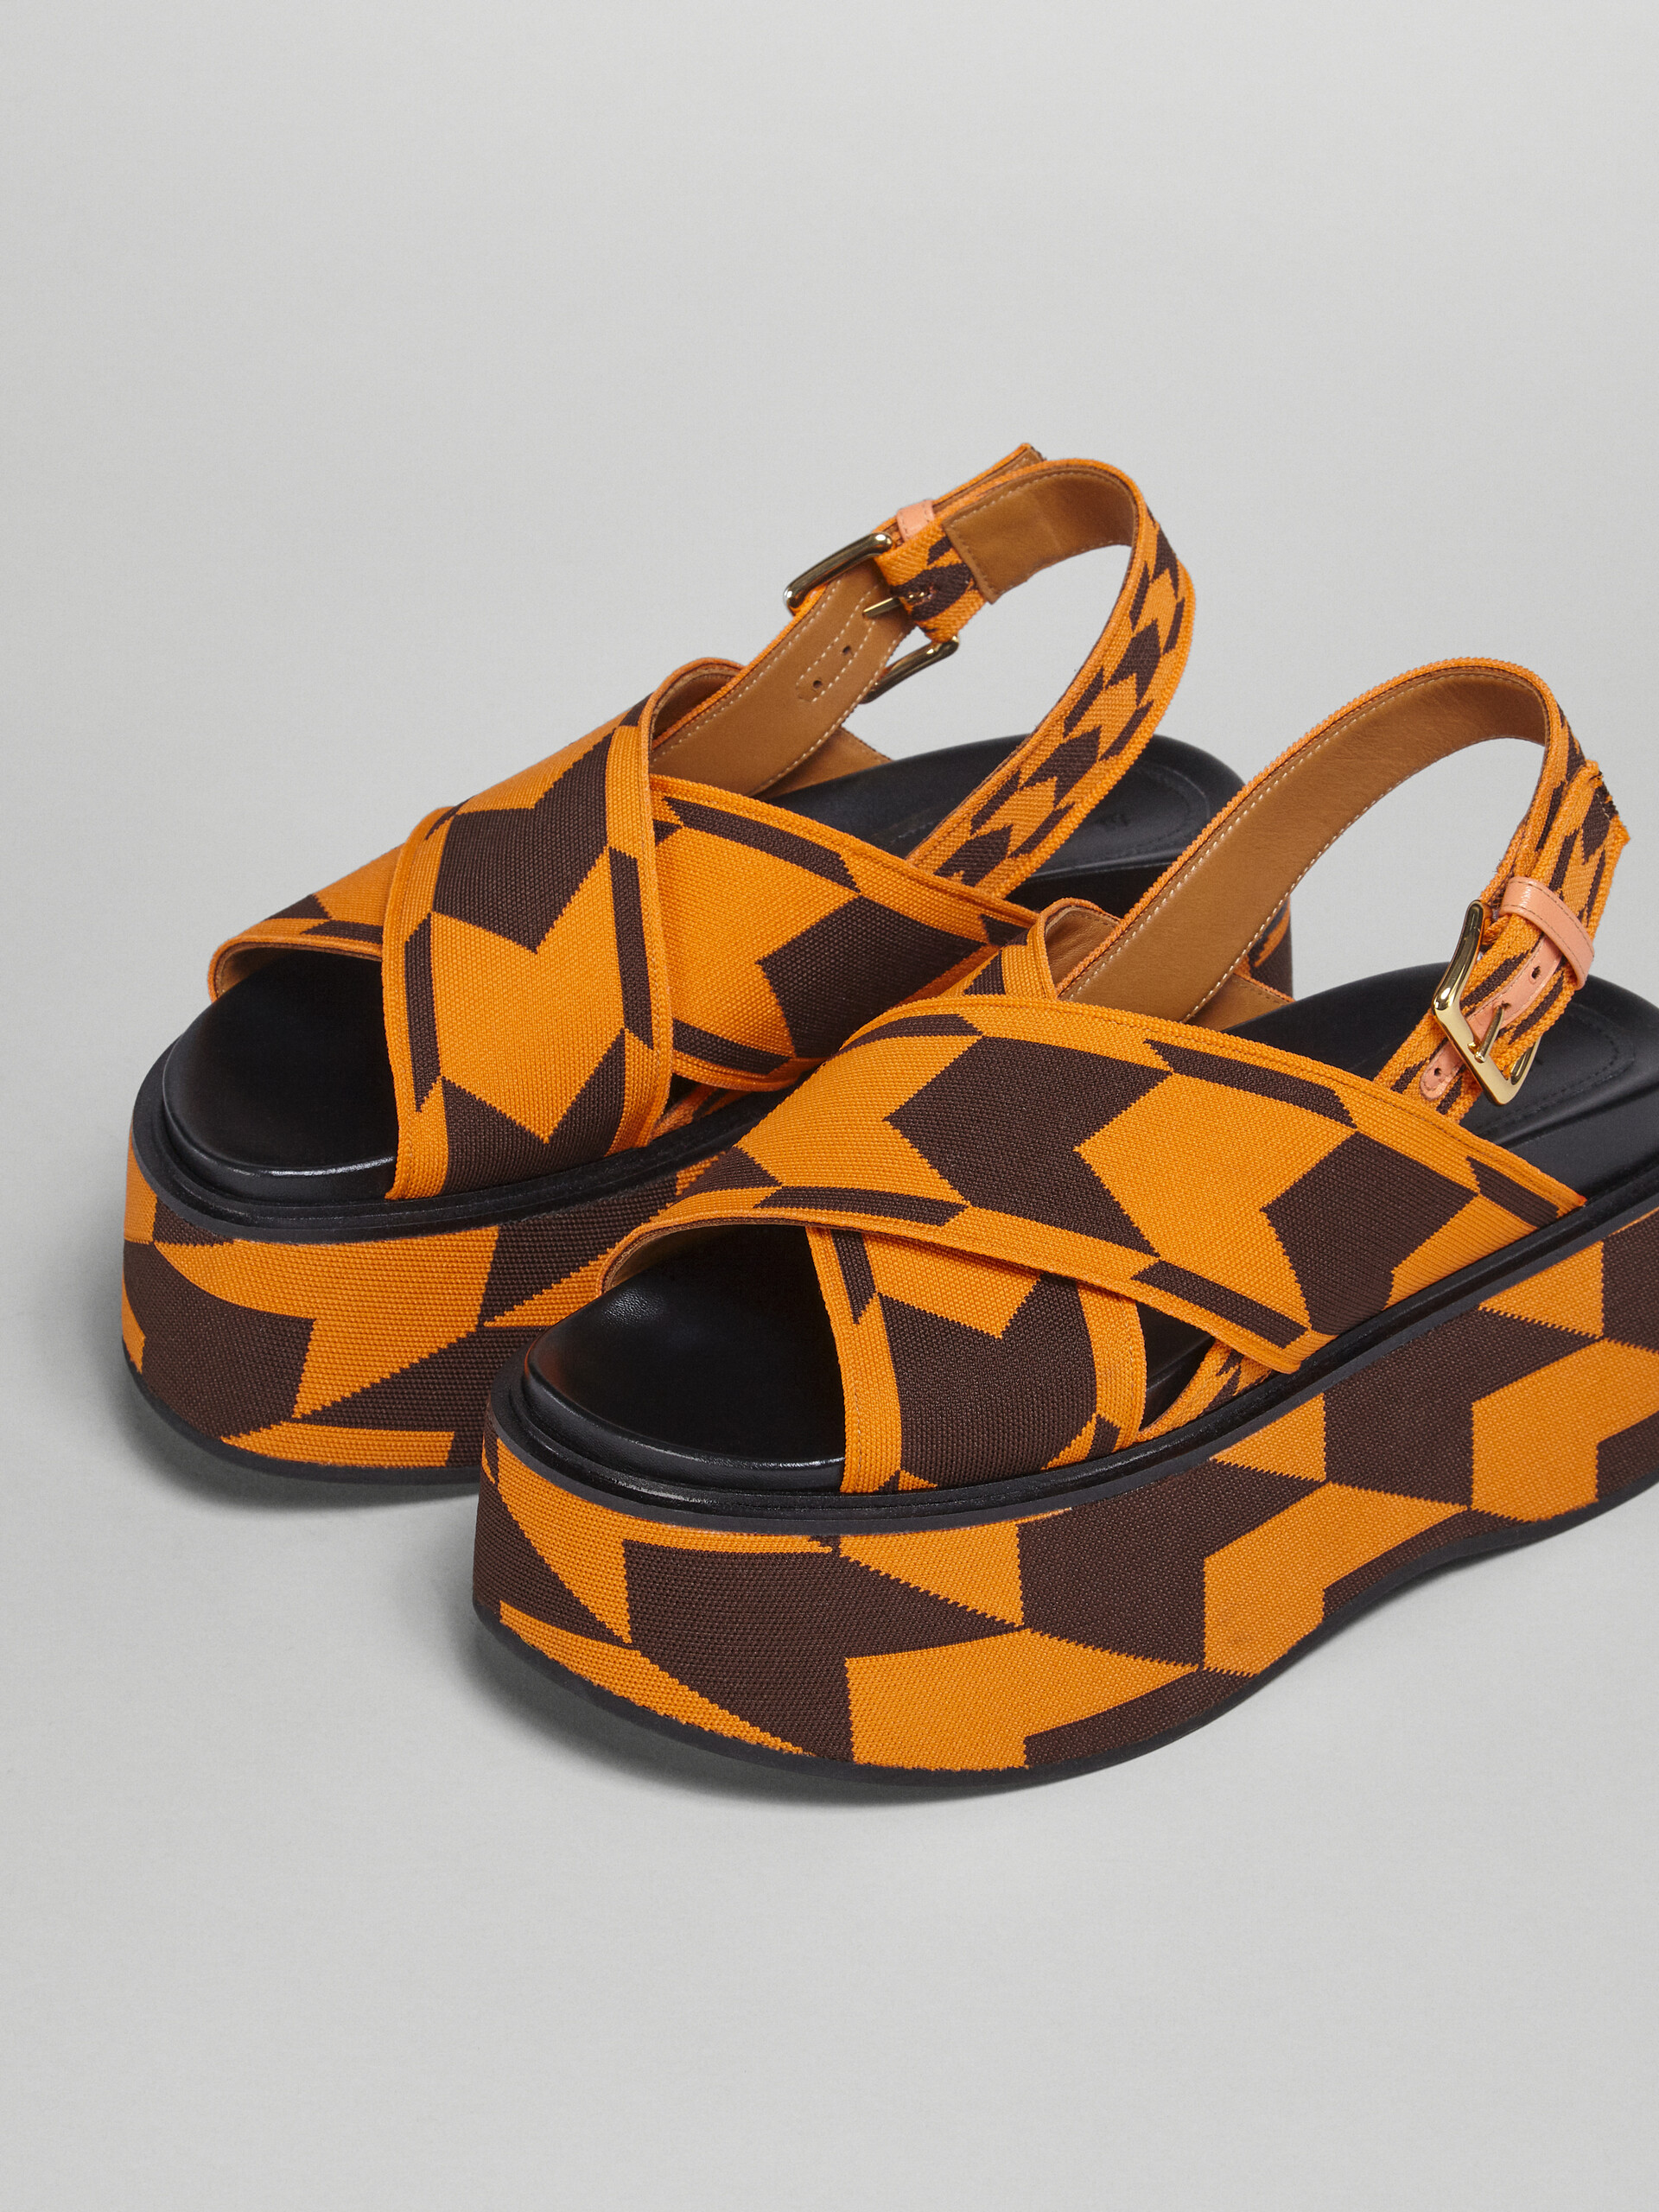 Houndstooth jacquard wedge sandal - Sandals - Image 5